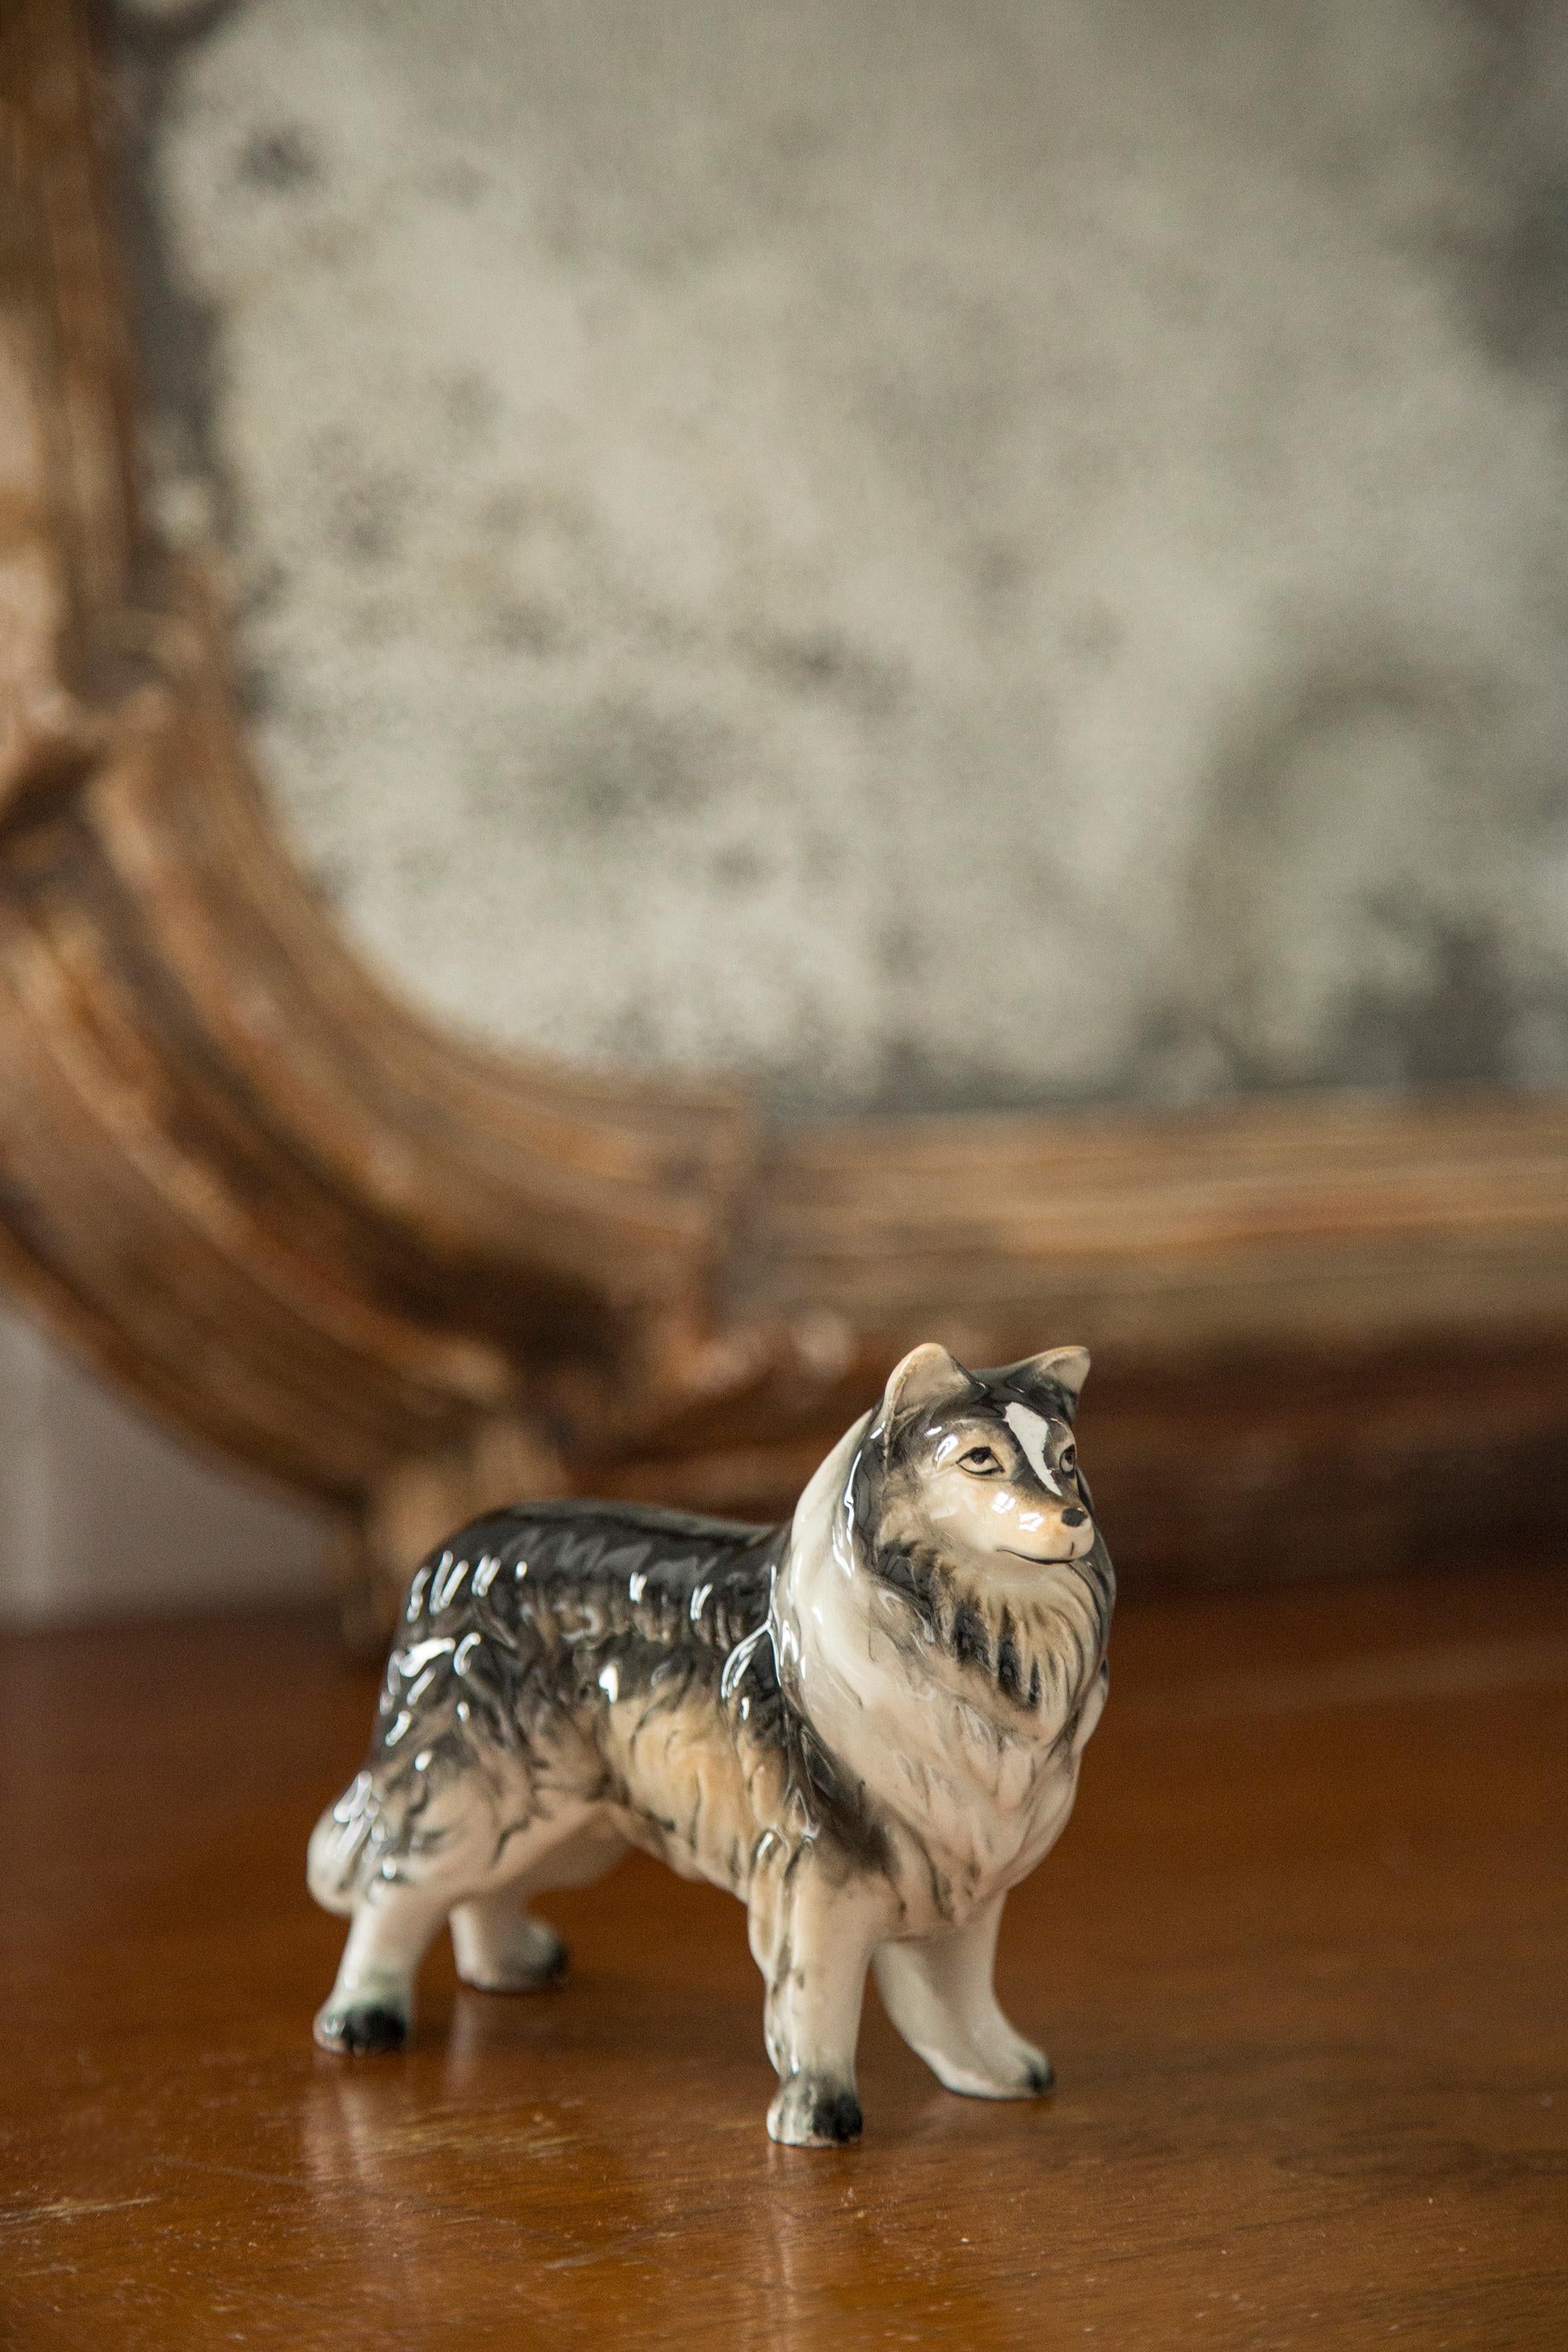 Bemalte Keramik, sehr guter originaler Vintage-Zustand. Keine Schäden oder Risse. Schöne und einzigartige dekorative Skulptur. Sheltie Shetland Sheepdog Dog Sculpture wurde in England hergestellt. Nur ein Hund verfügbar.